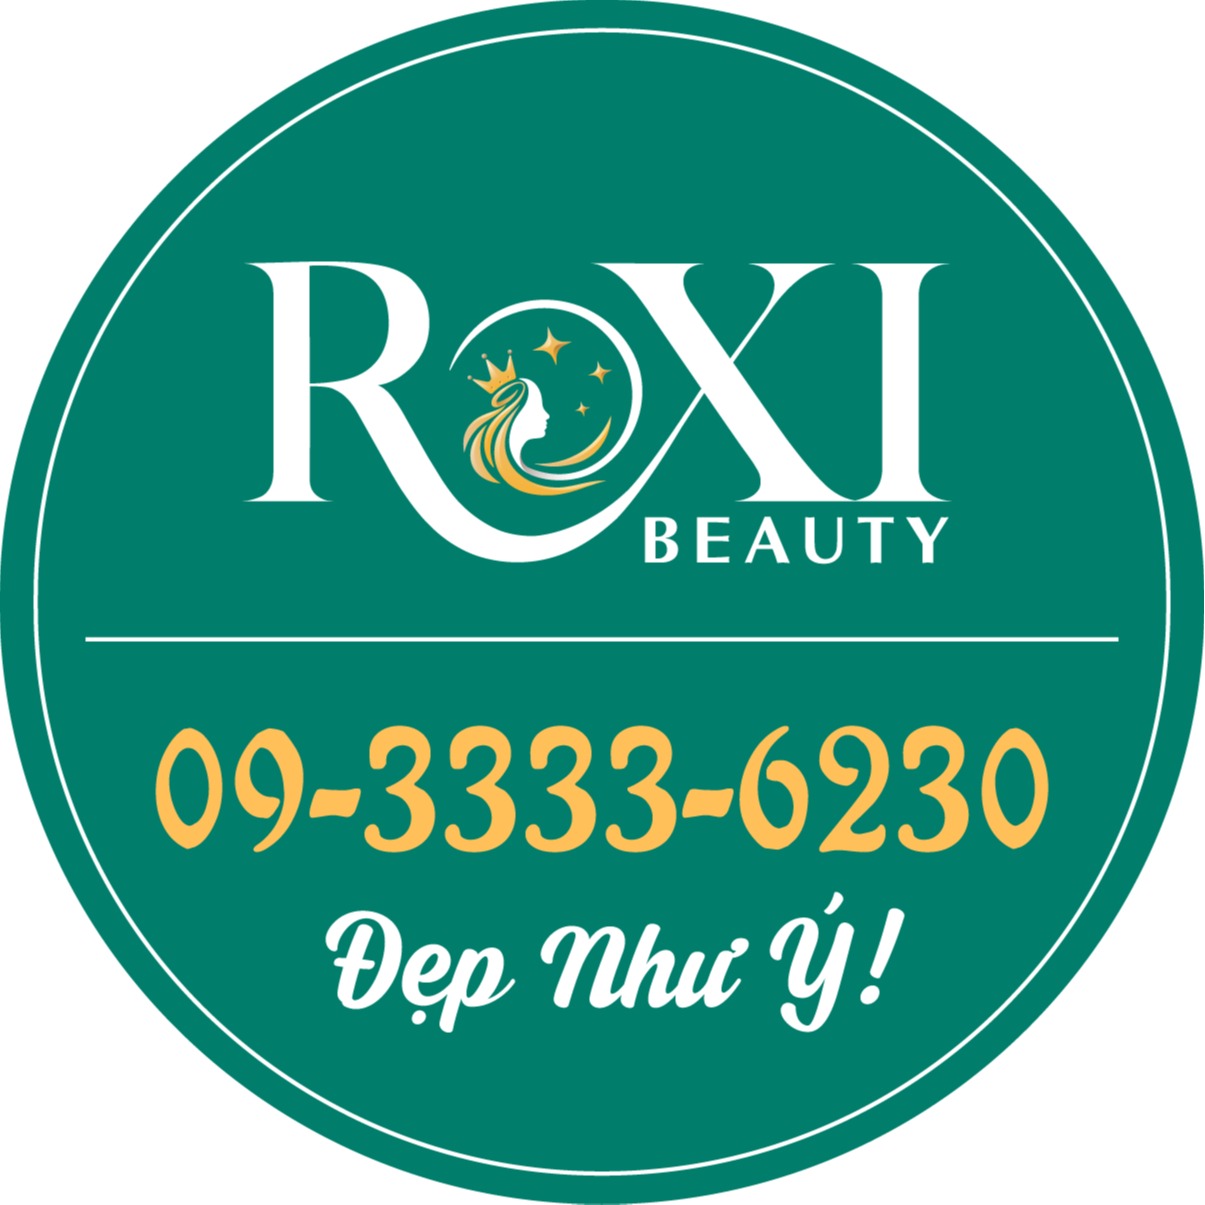 ROXI Beauty